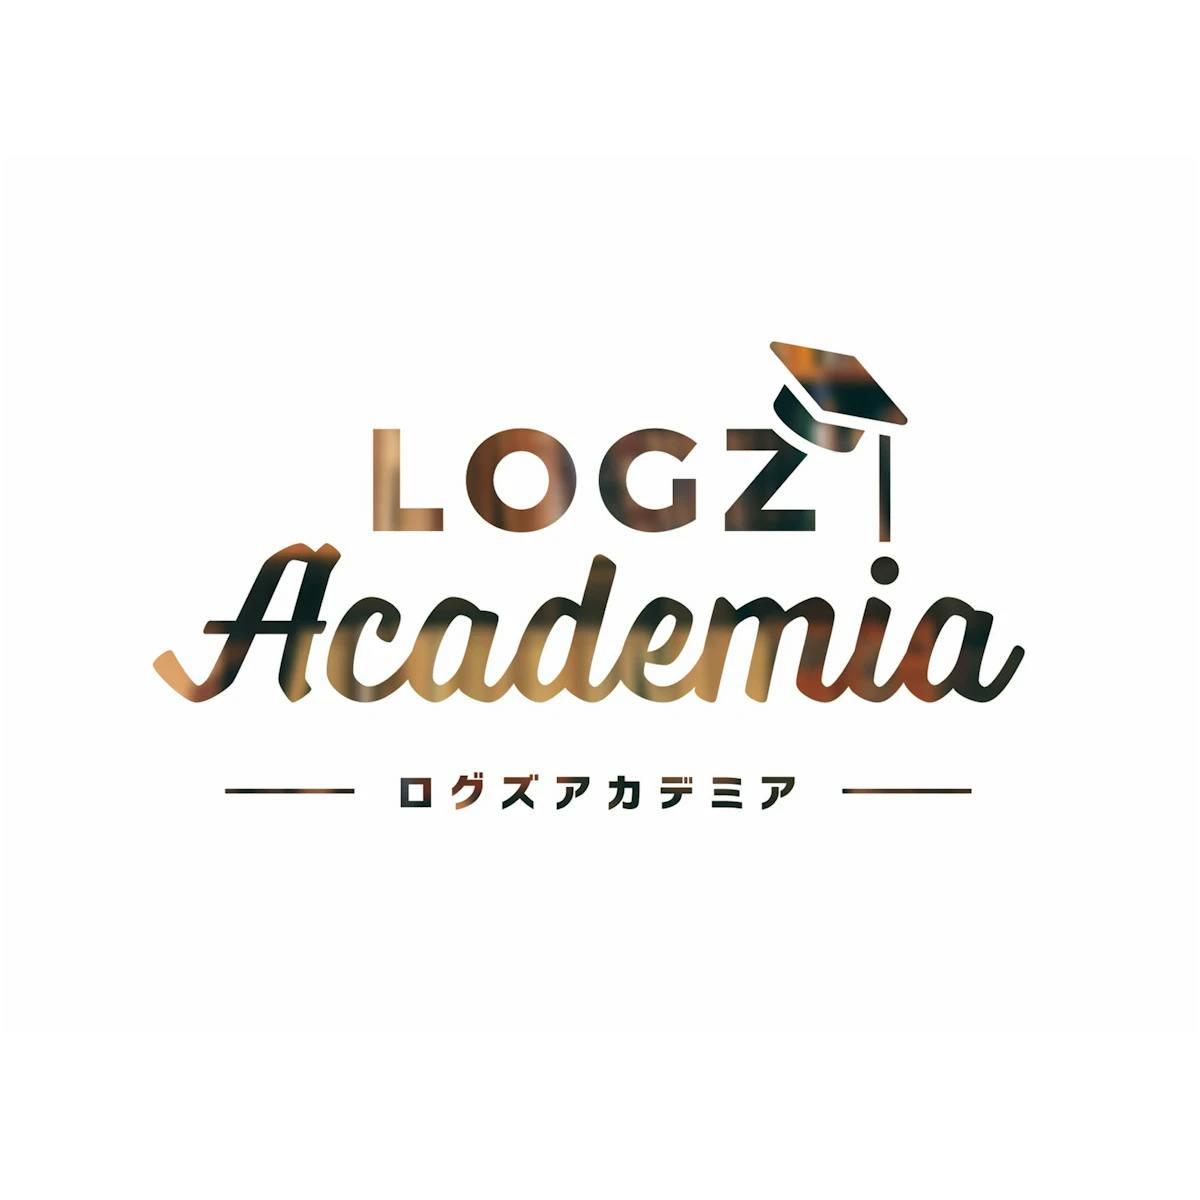 LOGZ Academia ロゴ